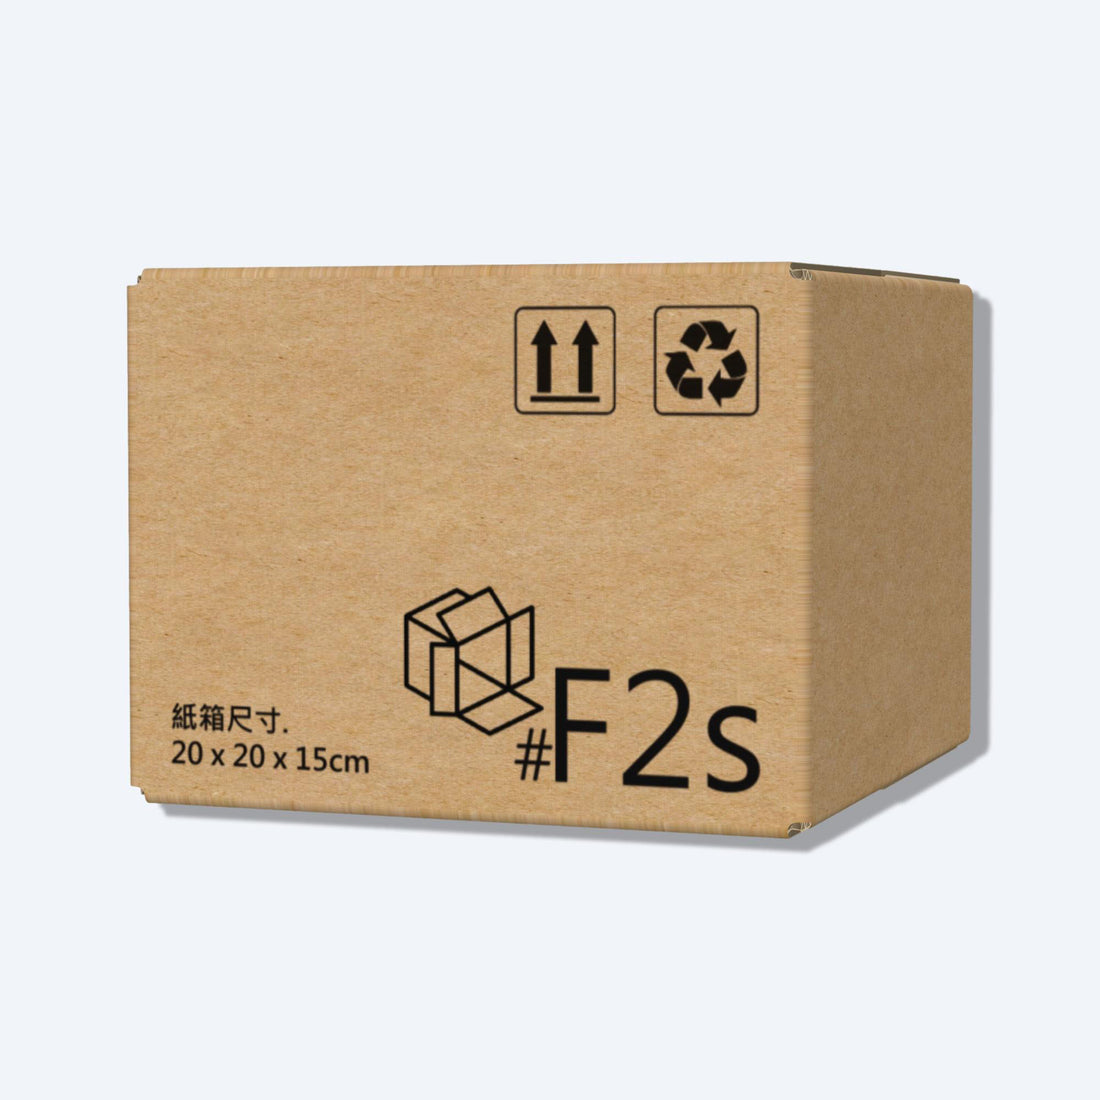 順豐速運F2s尺寸紙箱側視圖，展示尺寸和質感，是適合中型物品運輸的理想選擇。